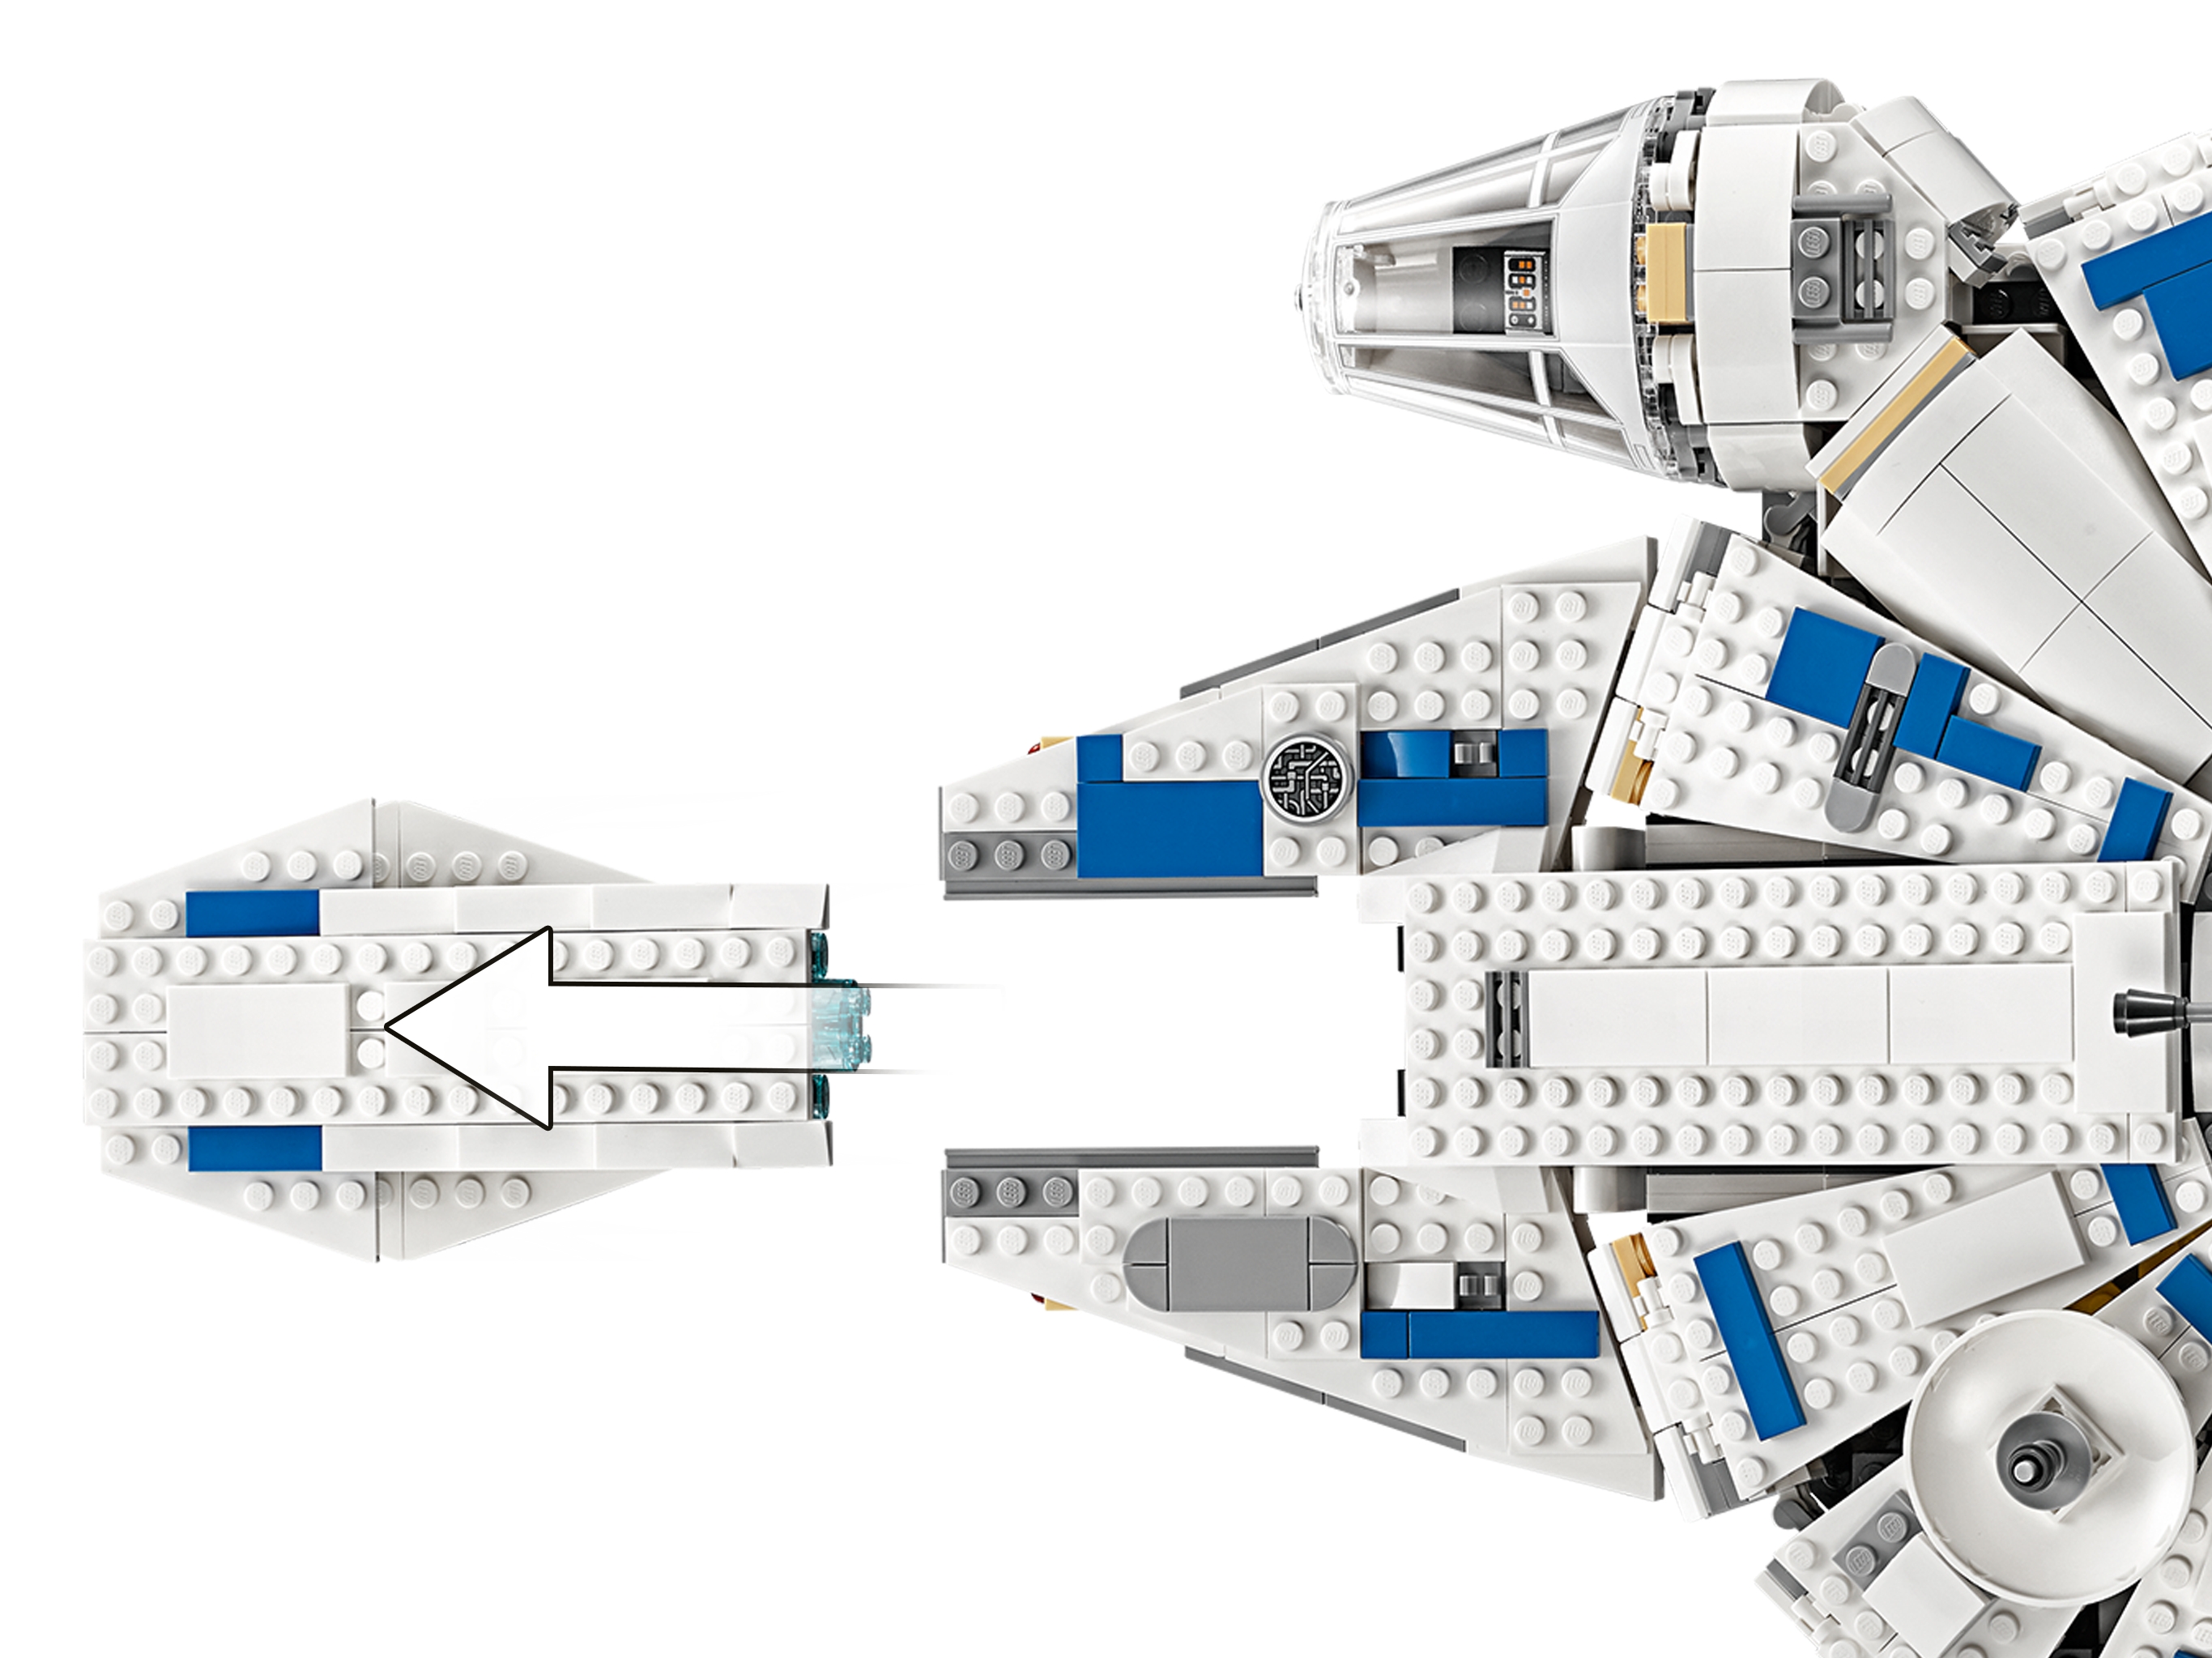 Milenario del corredor de Kessel | Star Wars™ | Oficial LEGO® ES